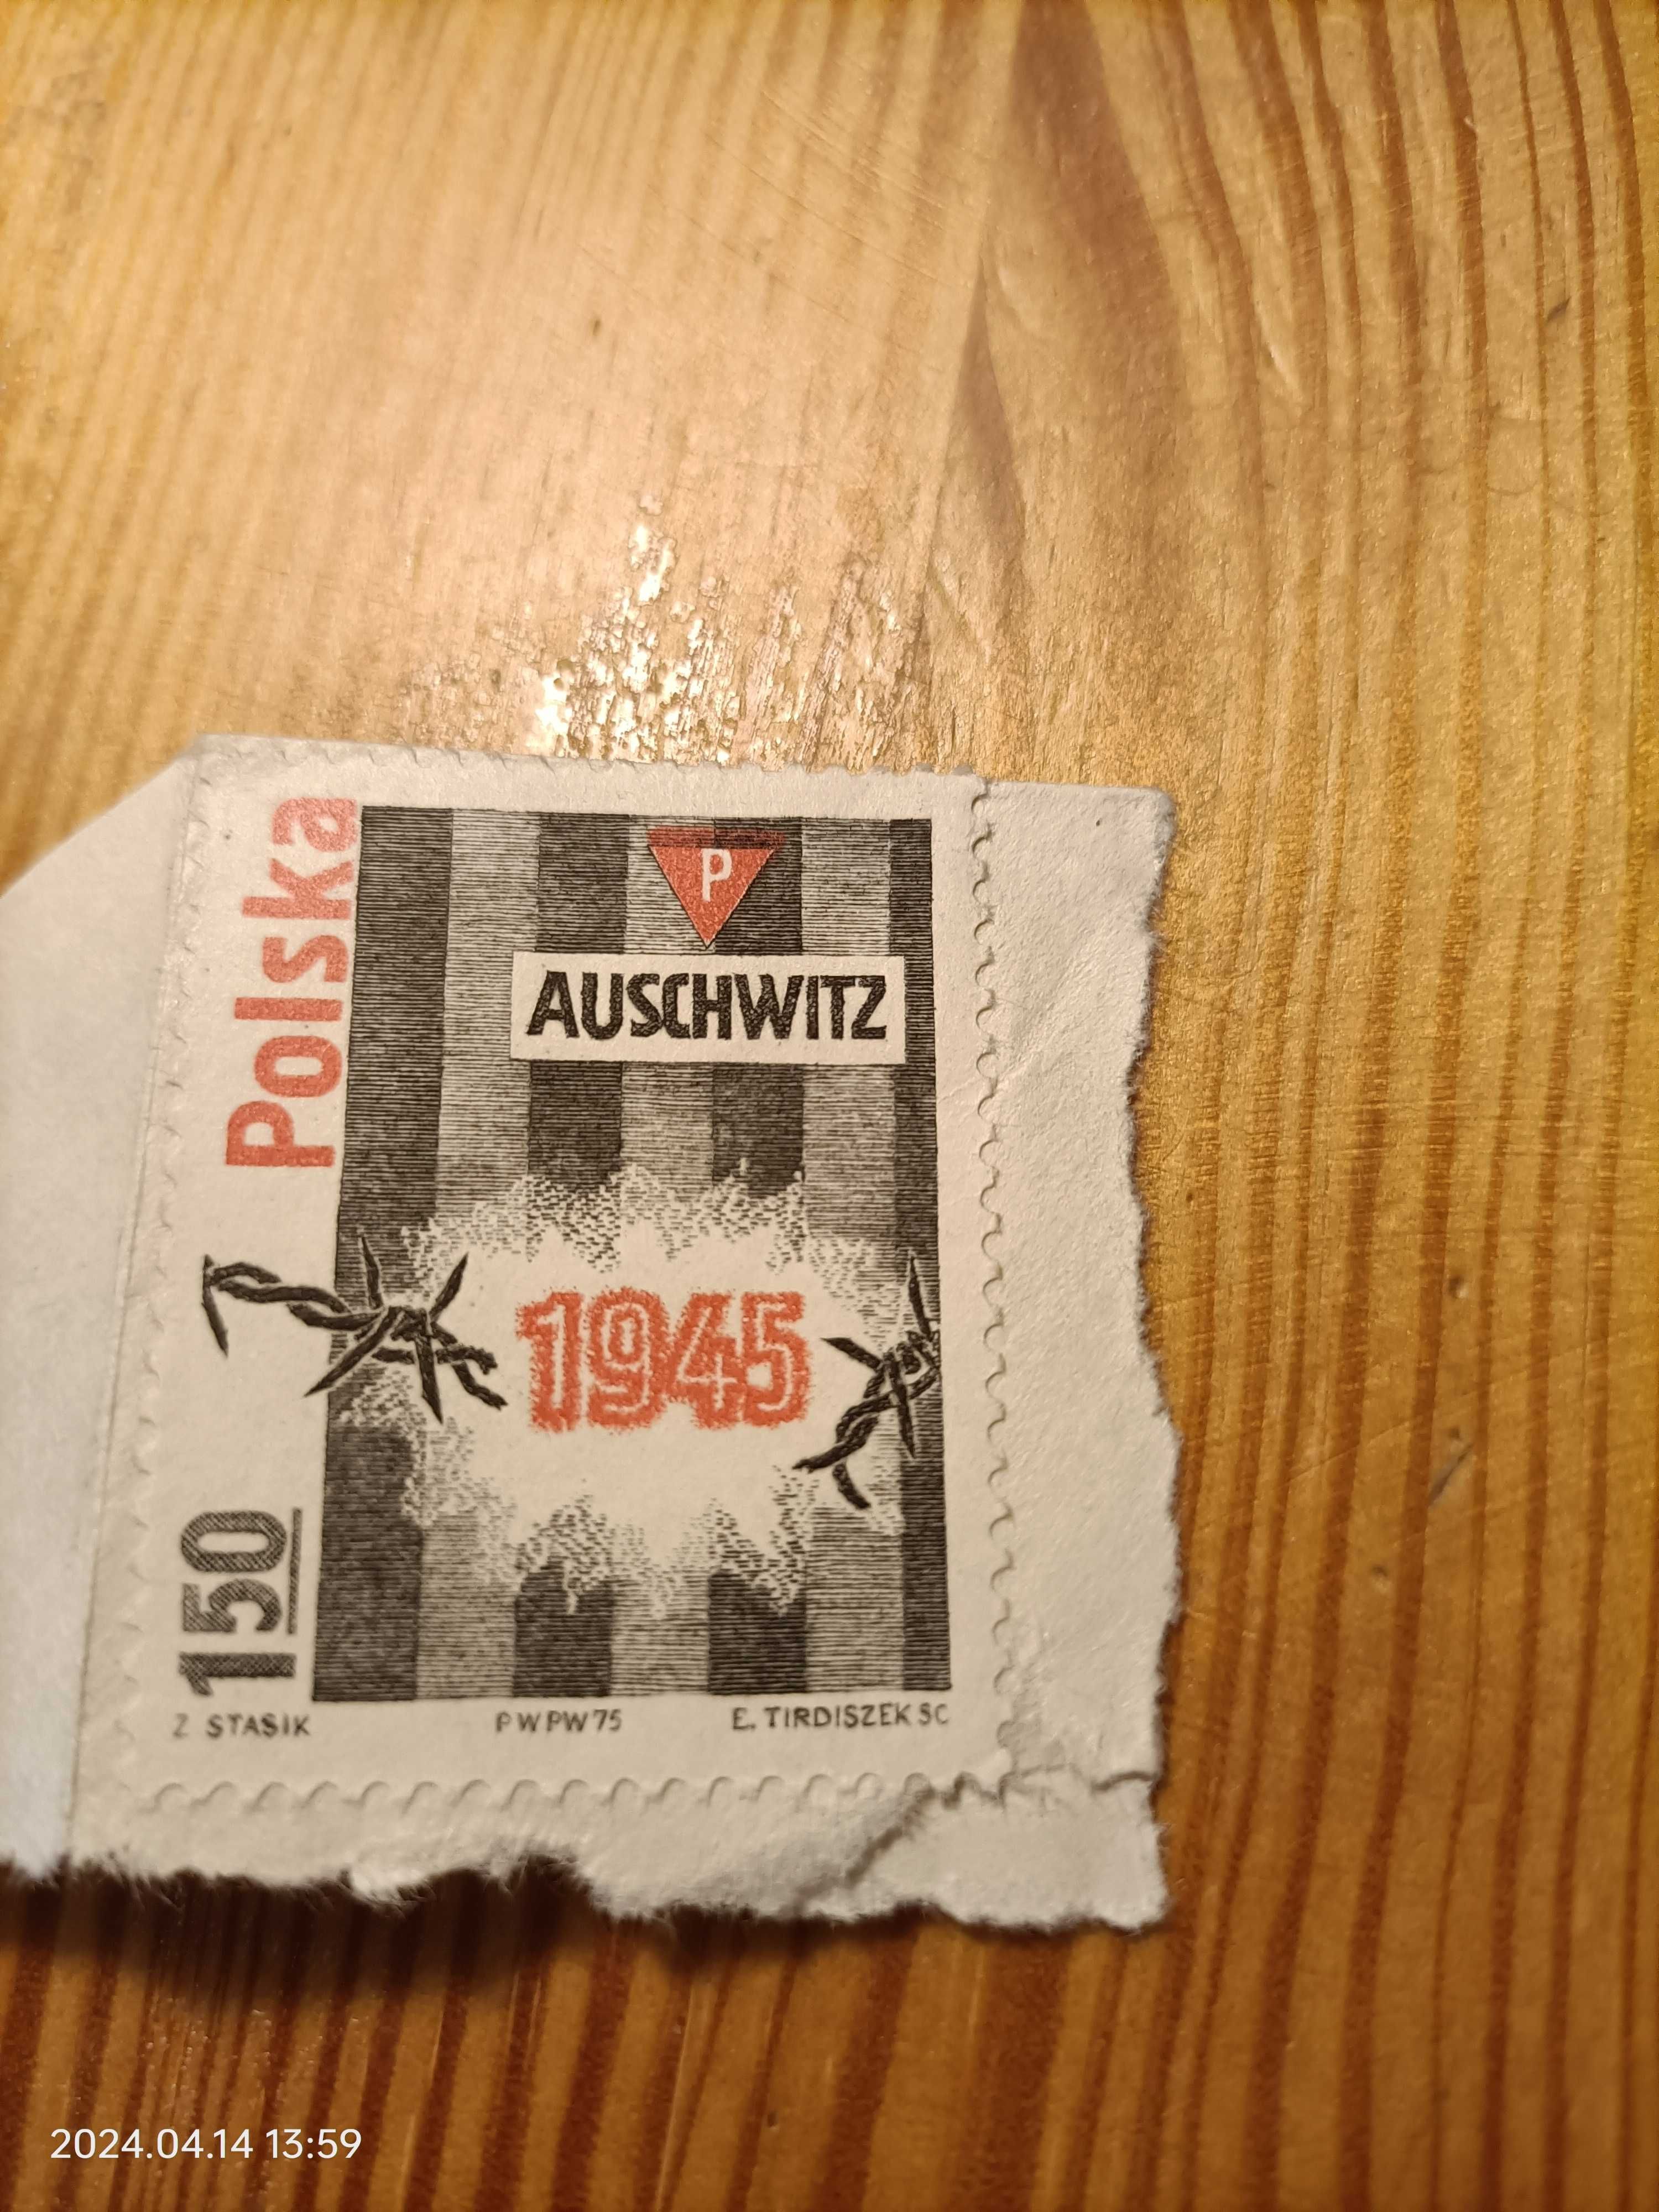 znaczek Auschwitz 1945, rok wydania 1975